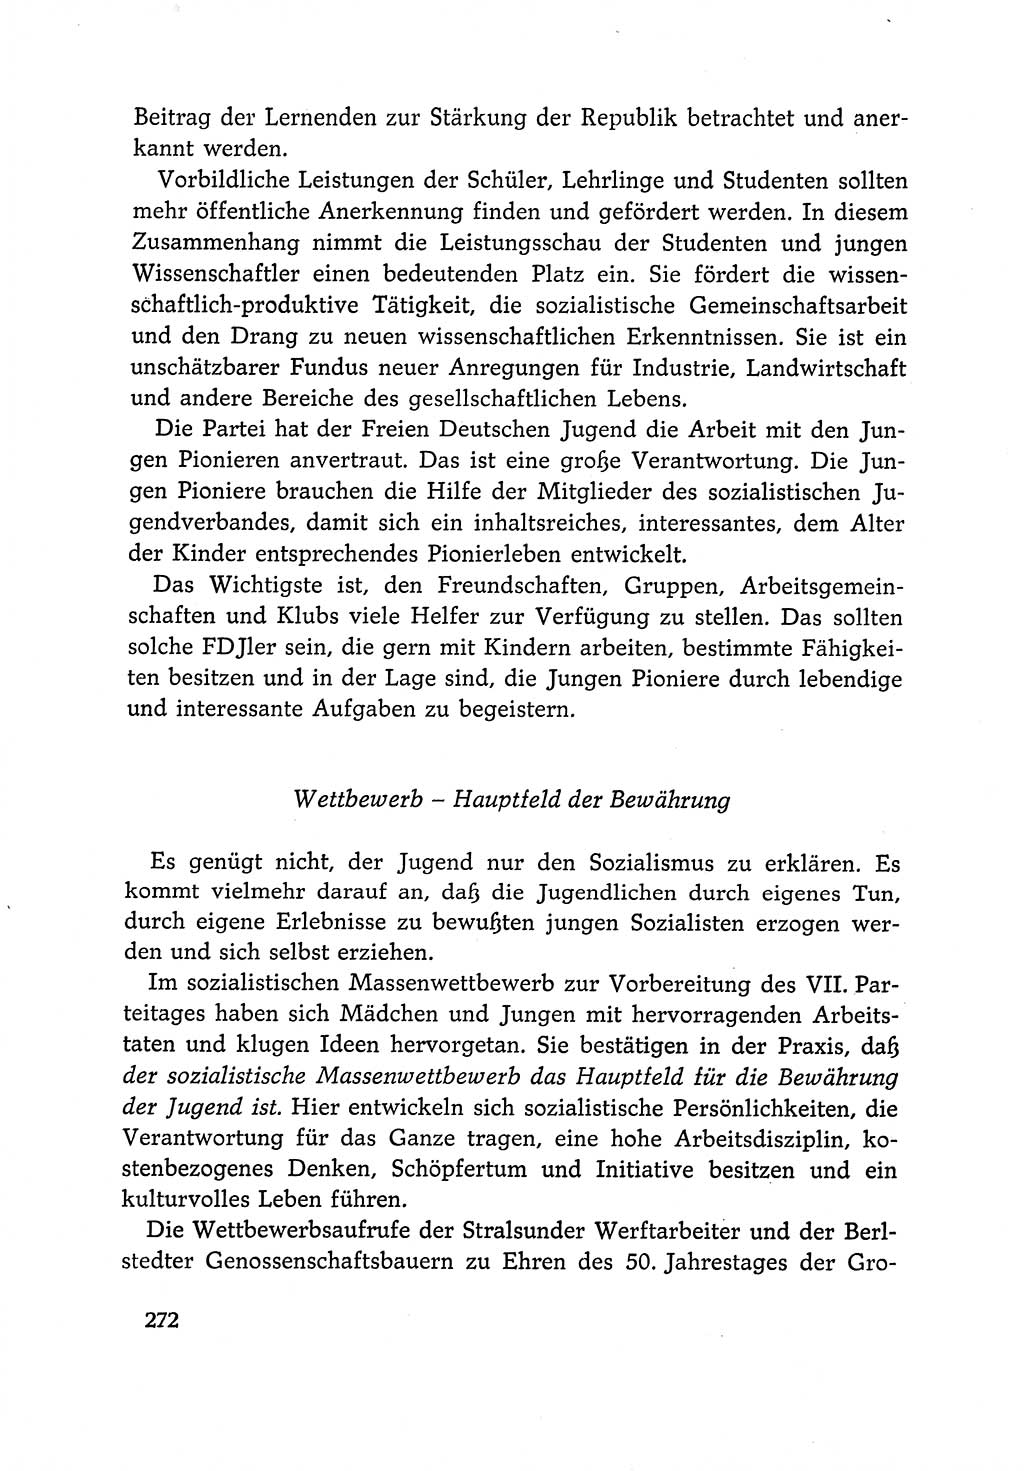 Dokumente der Sozialistischen Einheitspartei Deutschlands (SED) [Deutsche Demokratische Republik (DDR)] 1966-1967, Seite 272 (Dok. SED DDR 1966-1967, S. 272)